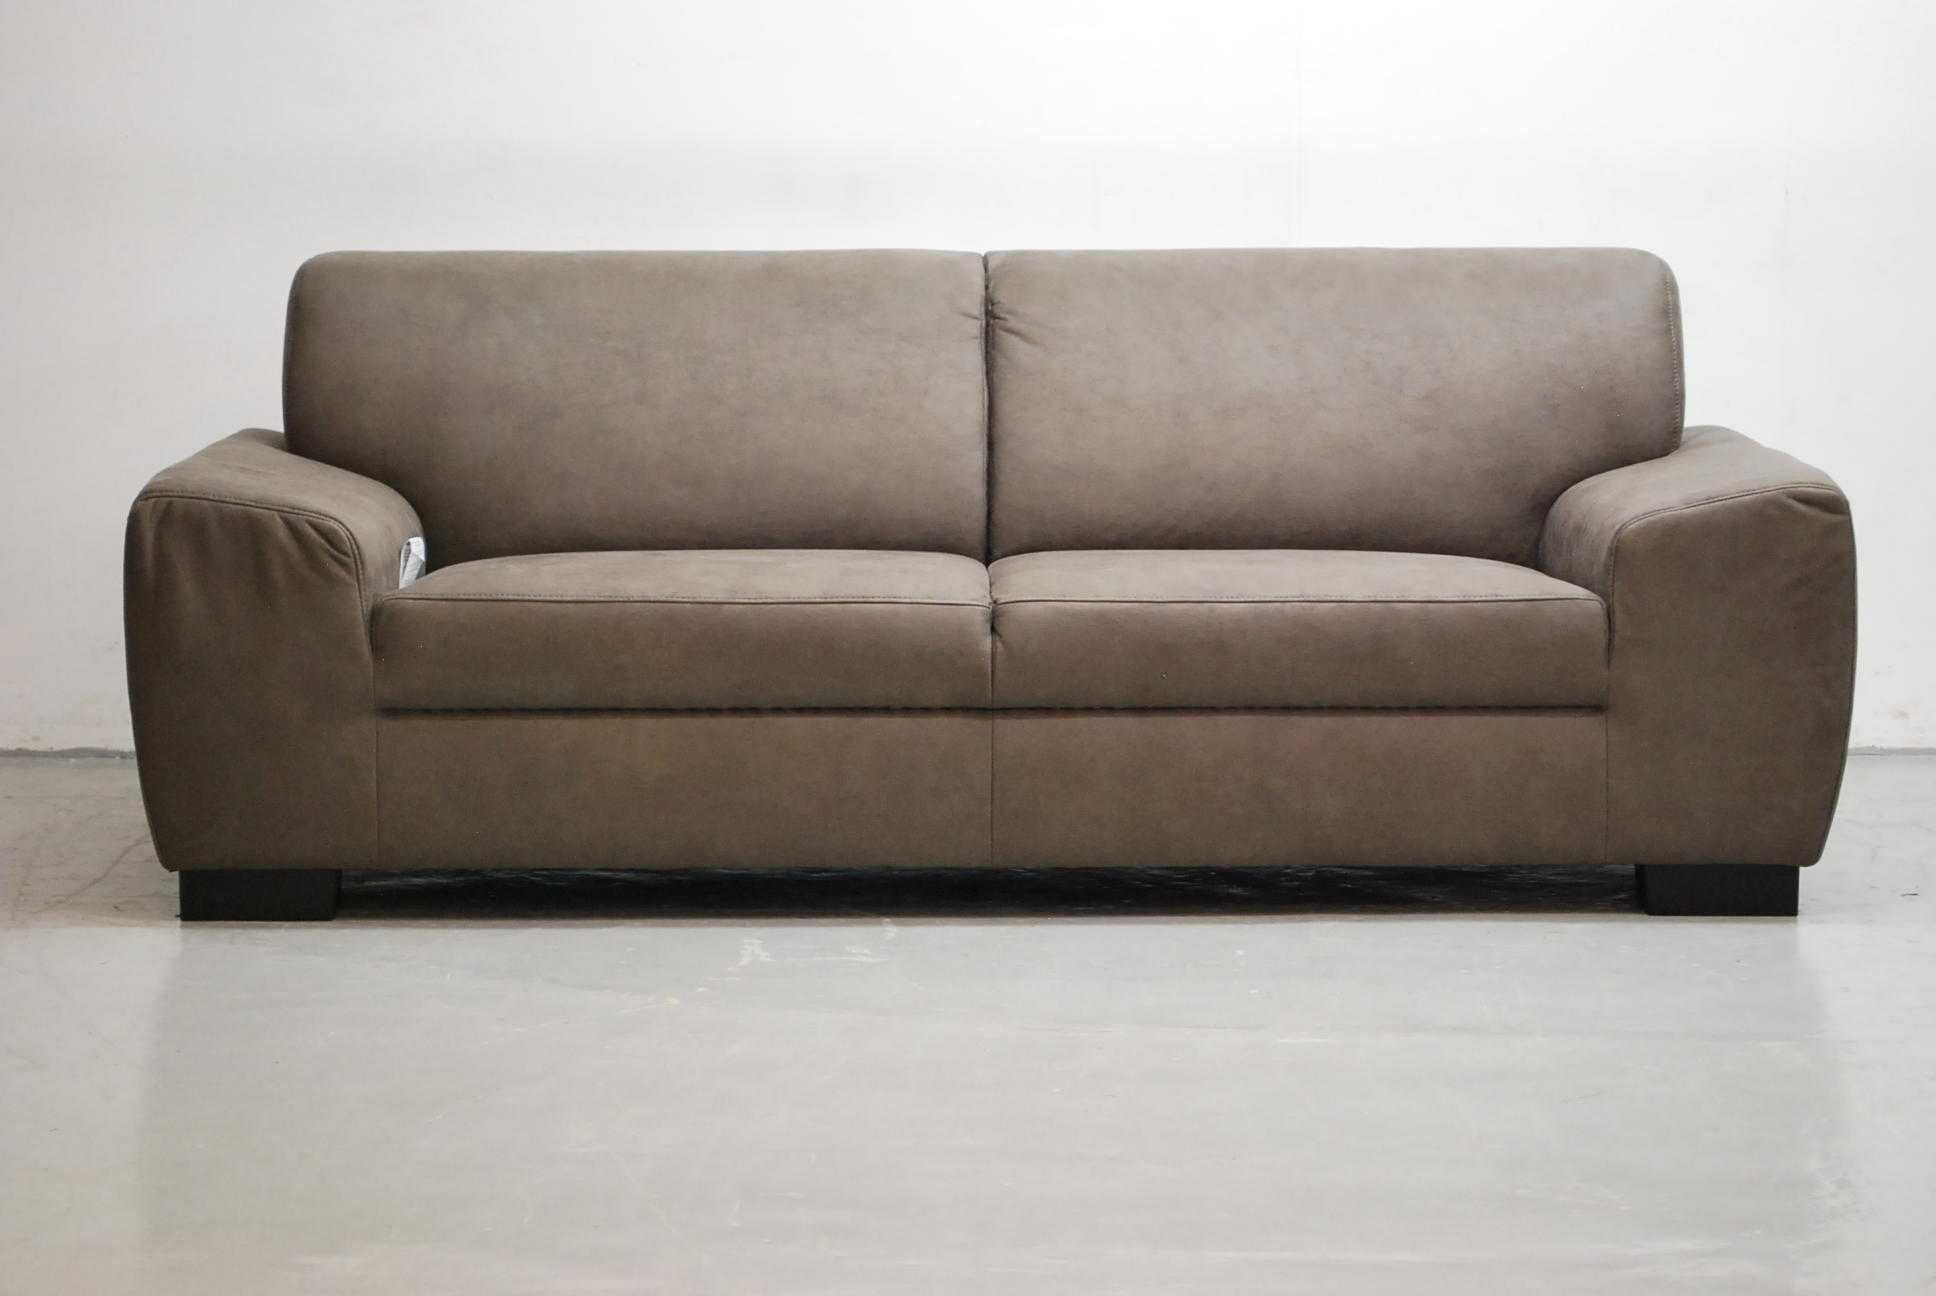 OTY nowoczesna sofa 3- osobowa okazja, salon poczeklania